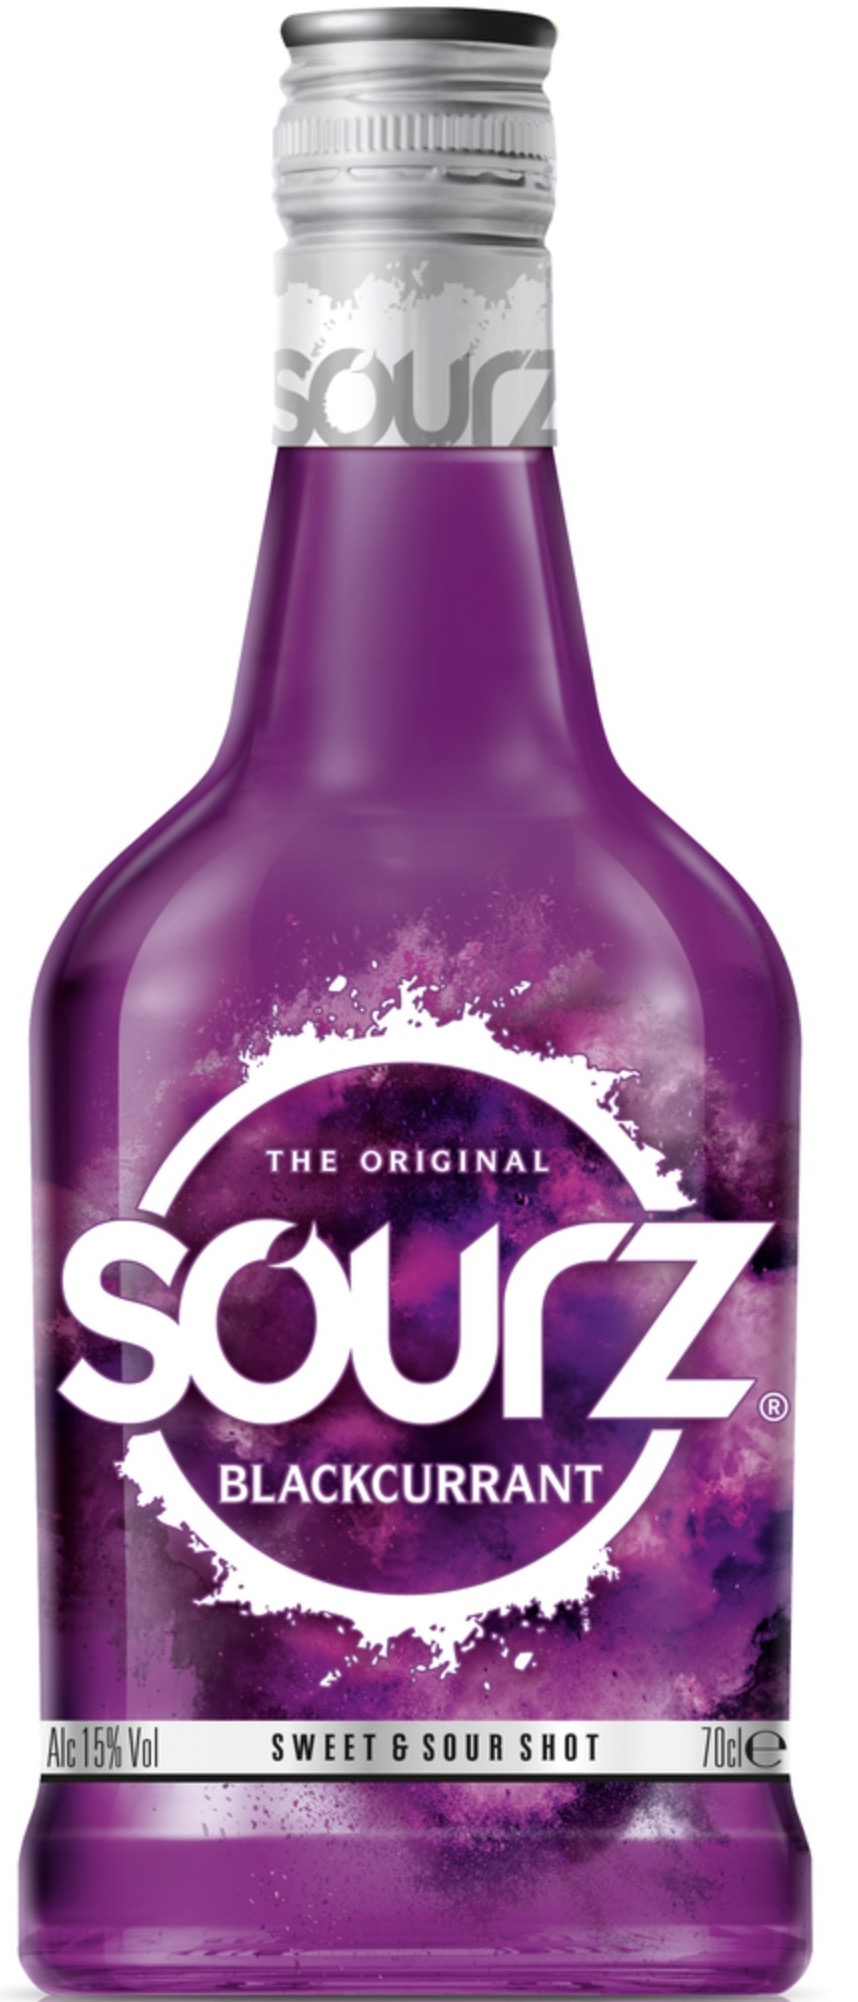 Sourz Blackcurrant 15% vol. 0,7L